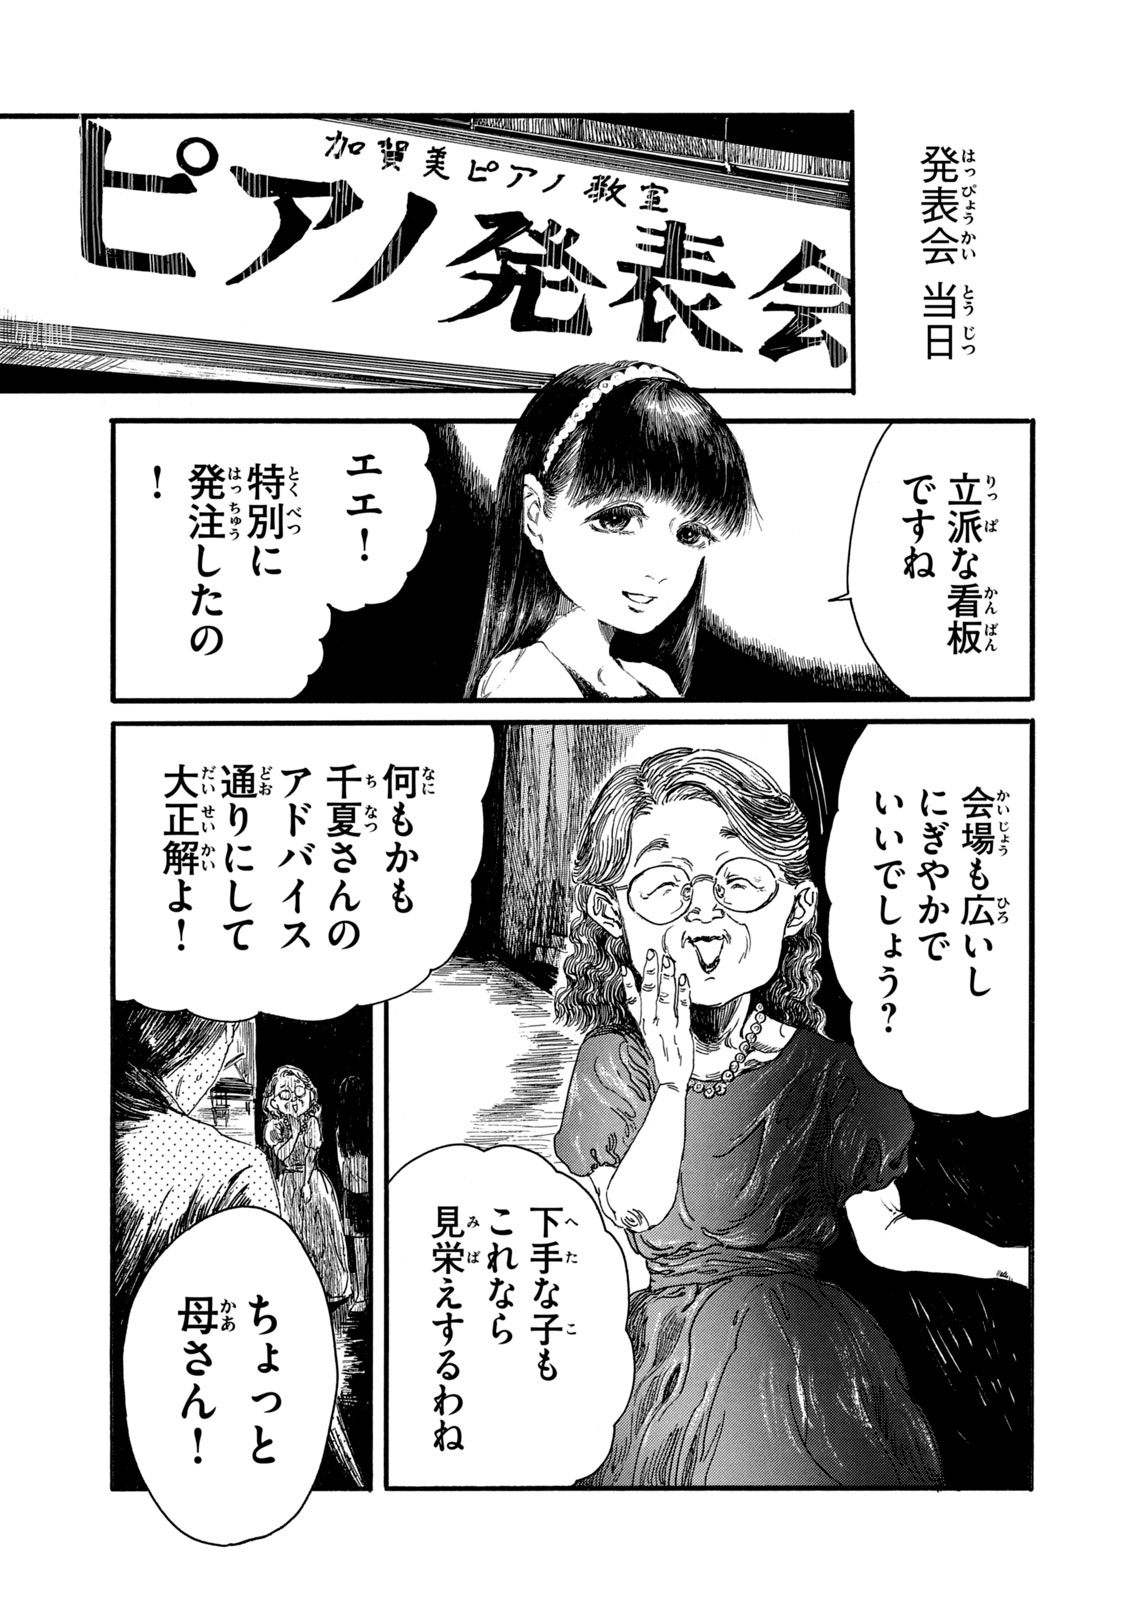 Watashi no Hara no Naka no Bakemono - Chapter 12 - Page 1